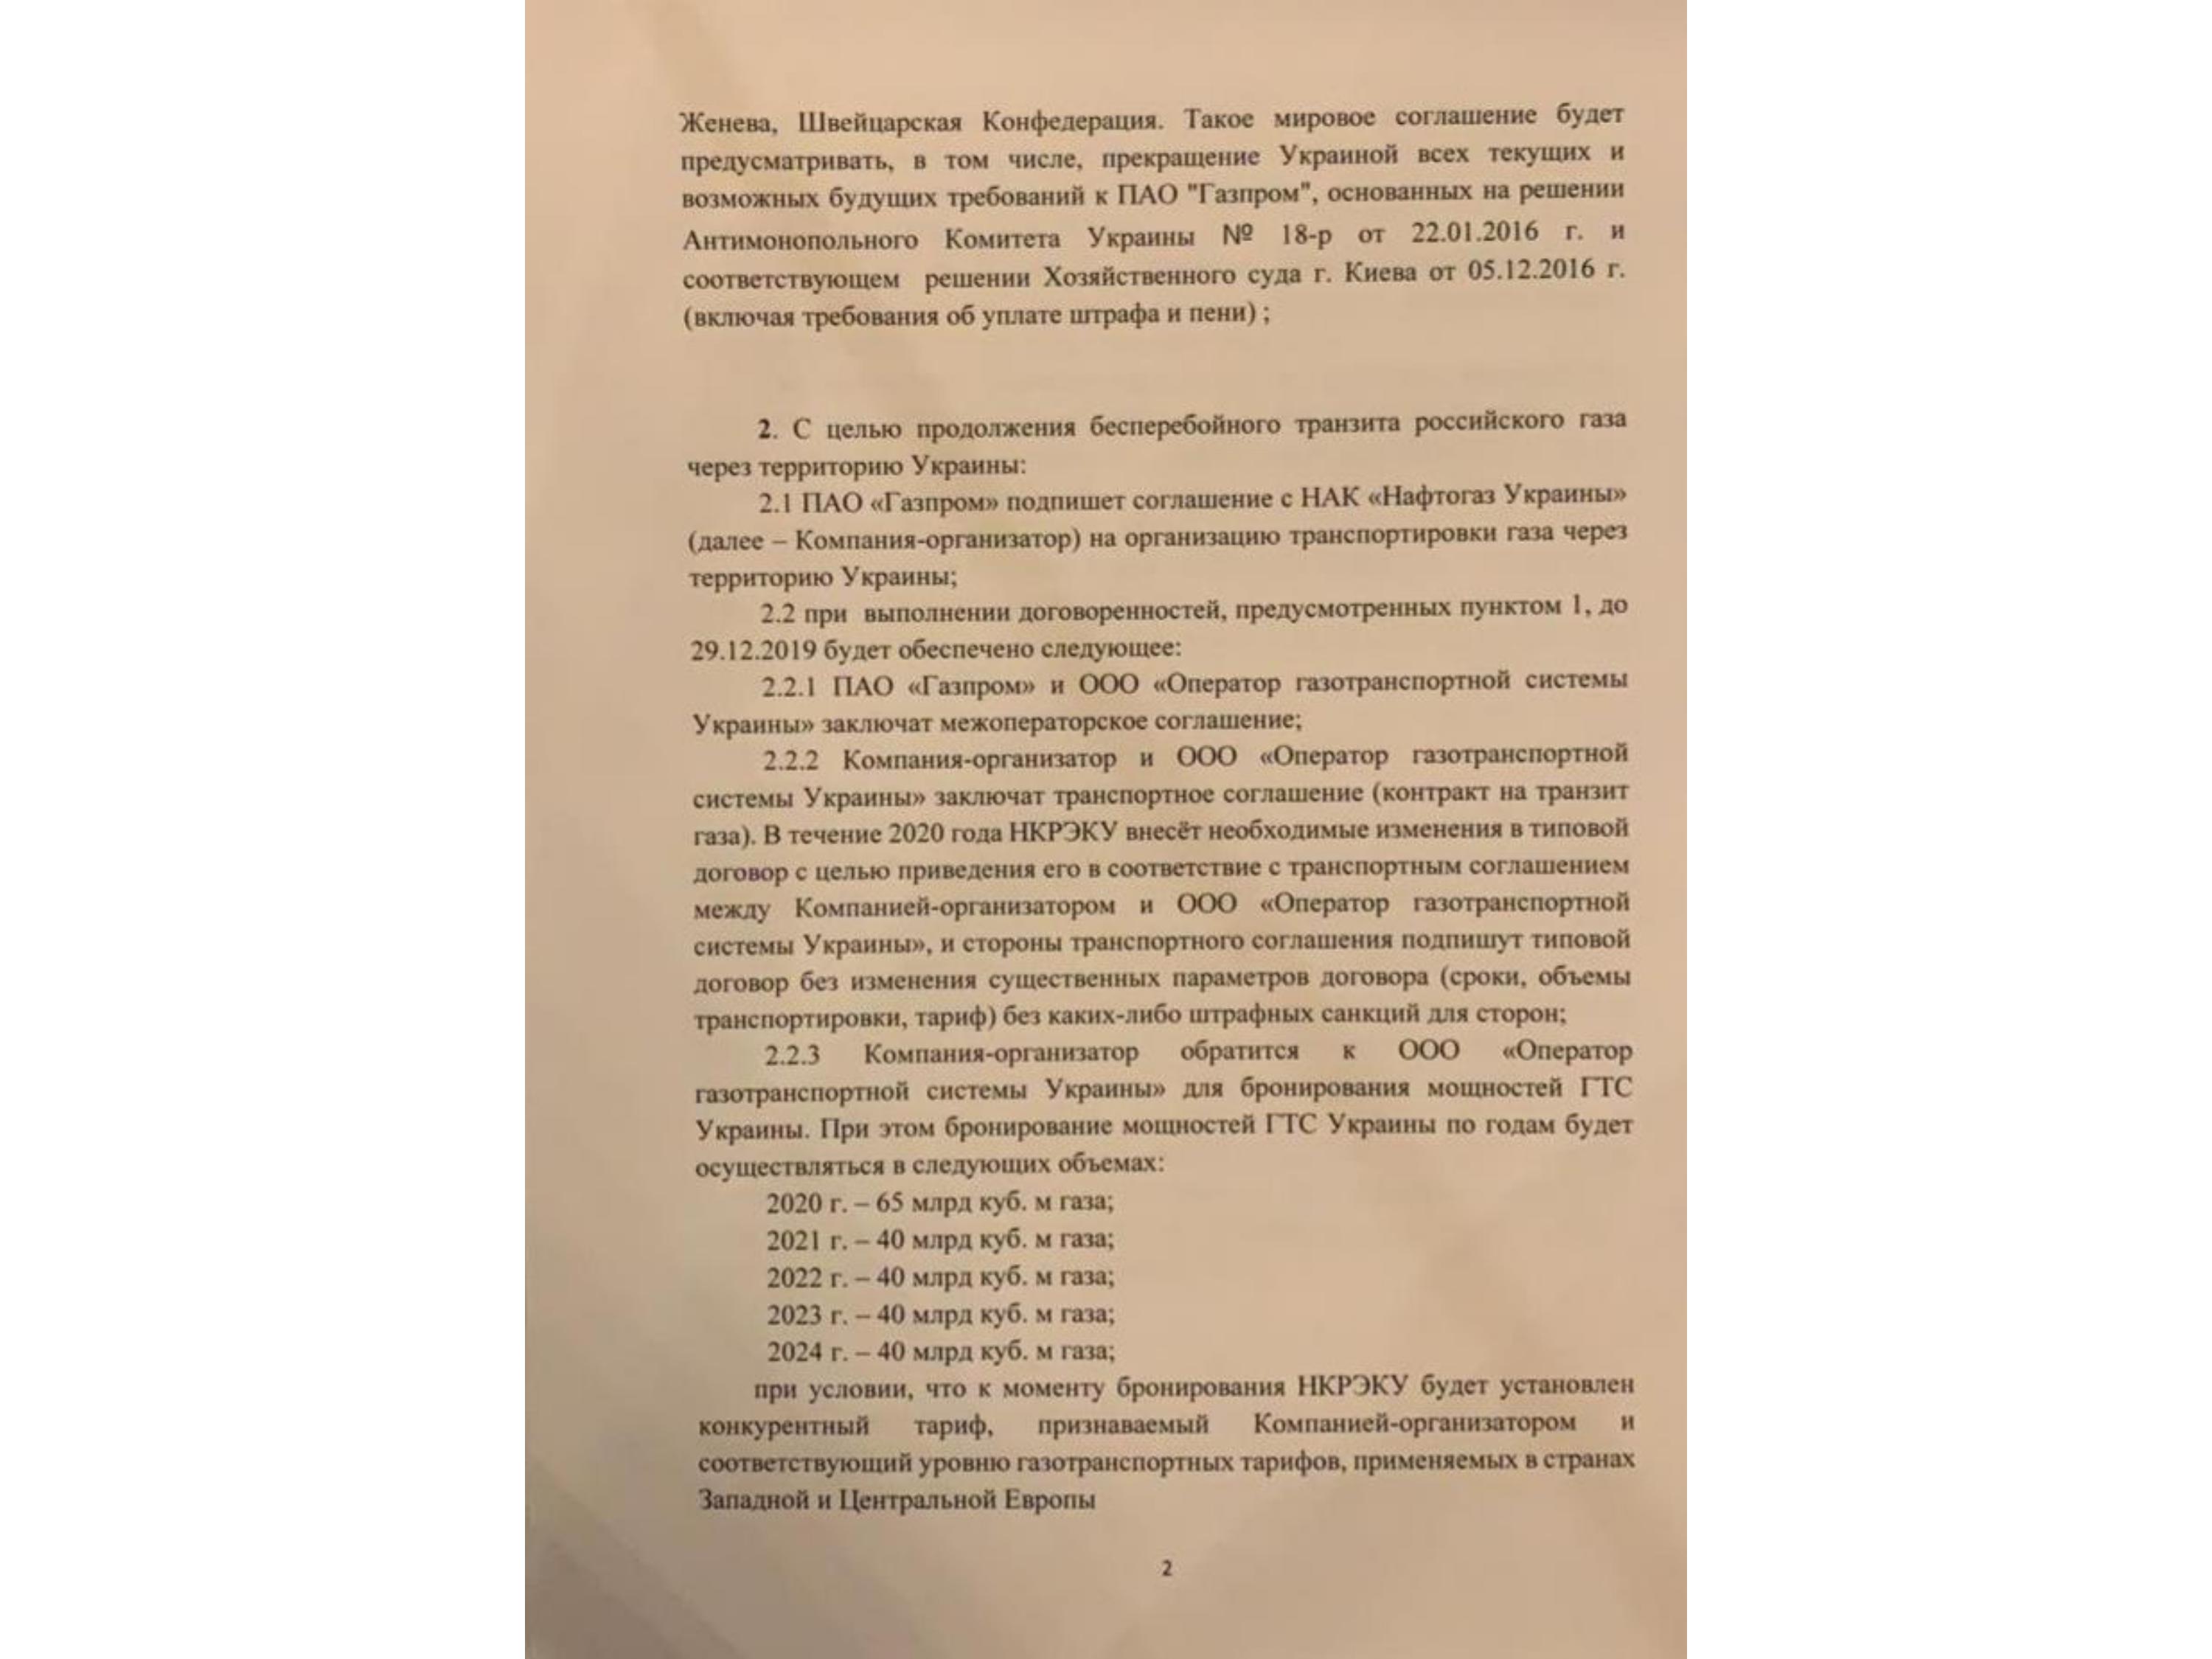 Договор транзита. Контракт на Транзит газа через Украину. Договор между Россией и Украиной на Транзит газа. Контракт на Транзит газа через Украину 2019. Сколько действует договор транзита газа на Украину.